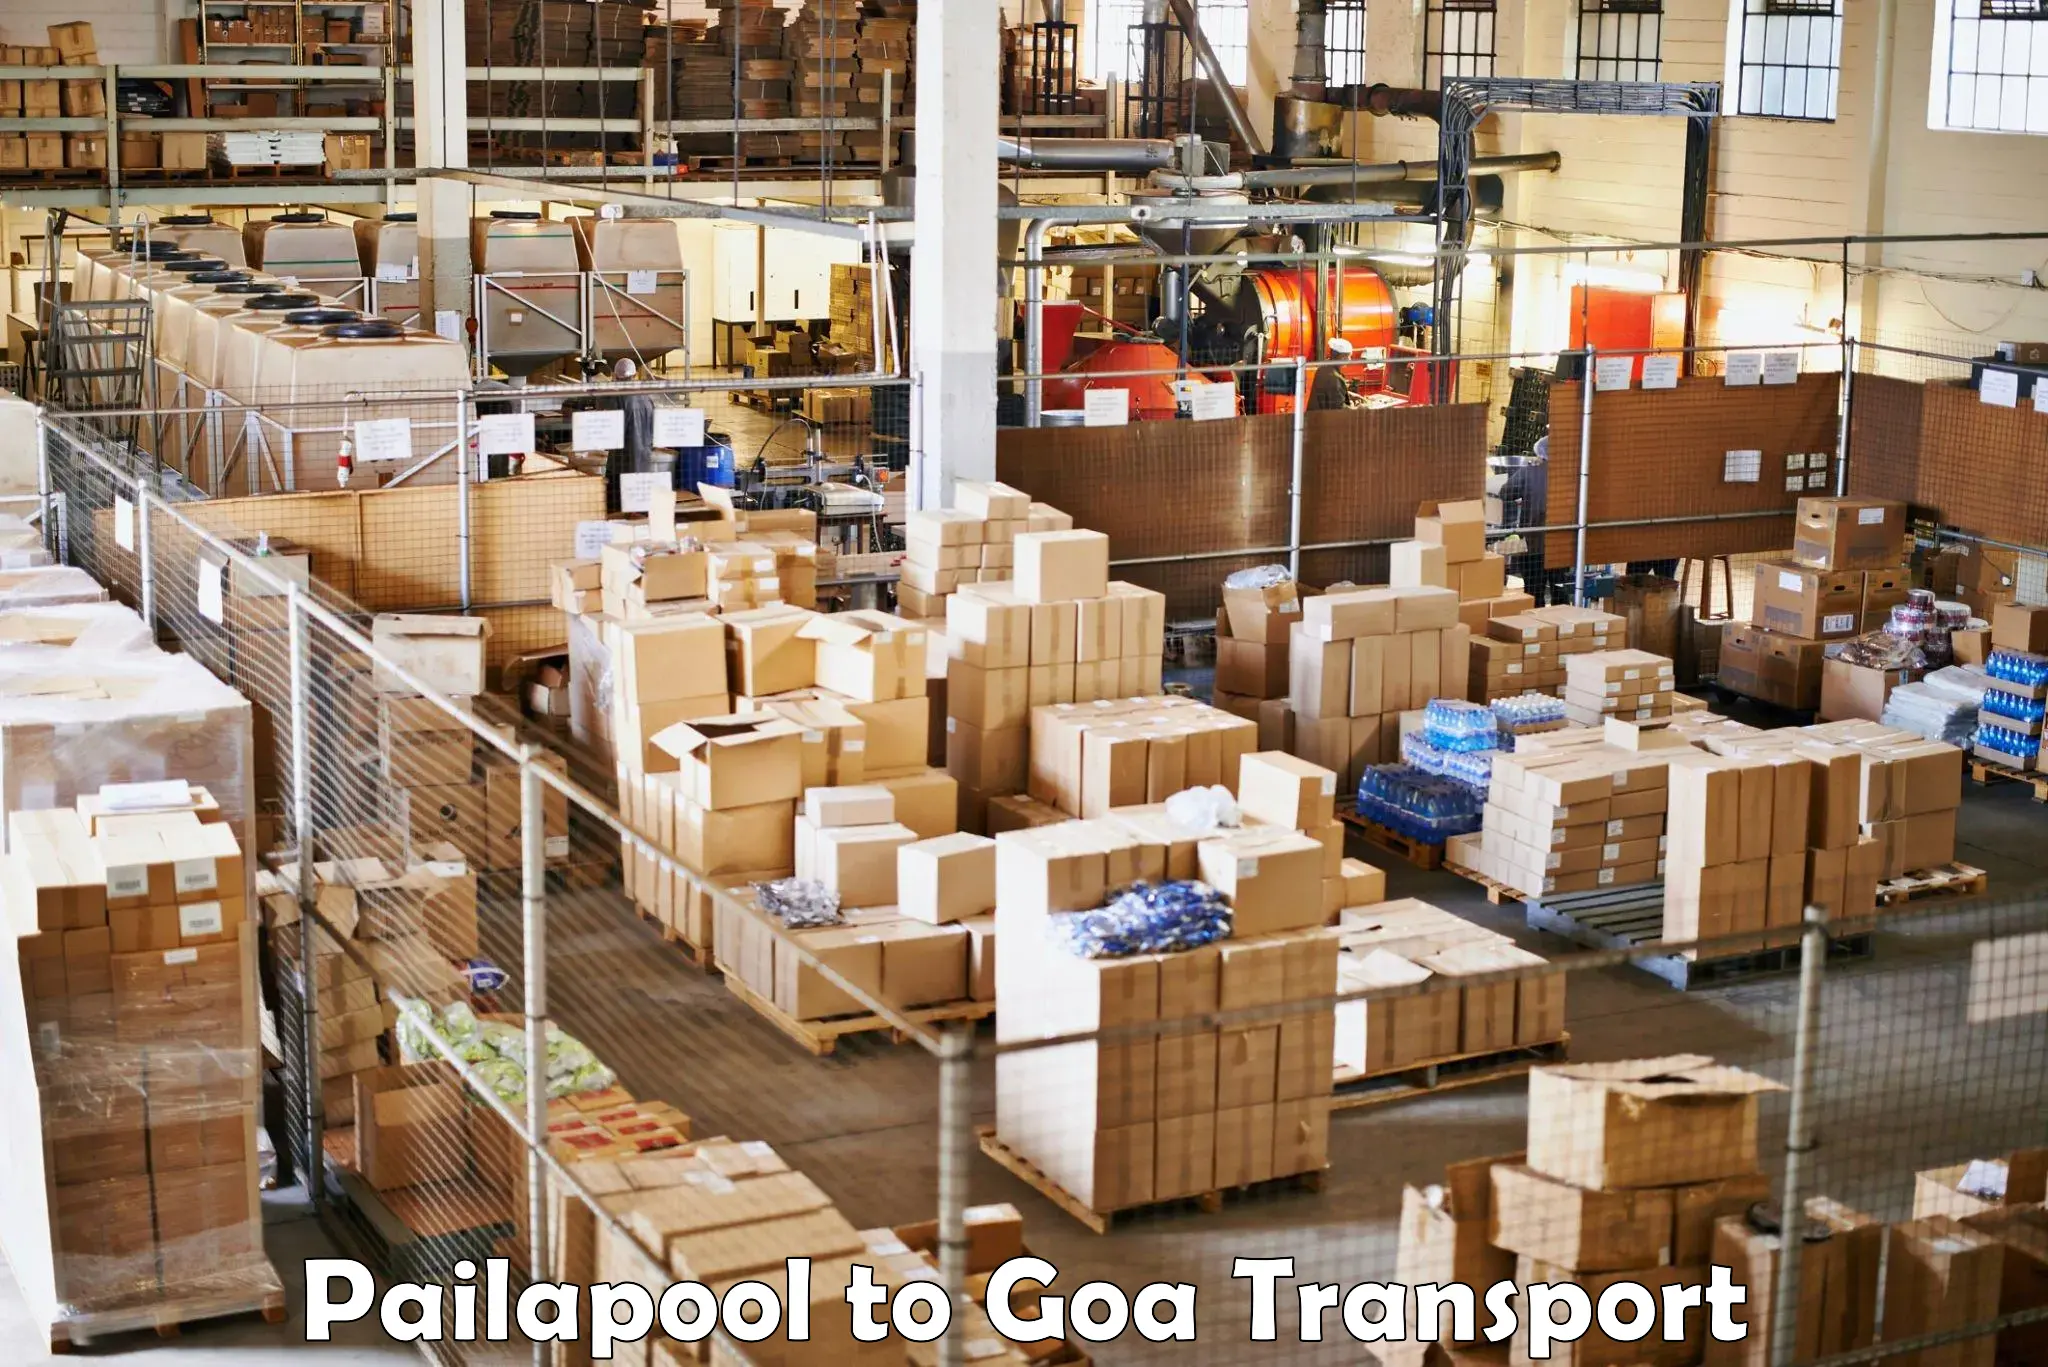 Road transport services Pailapool to Vasco da Gama